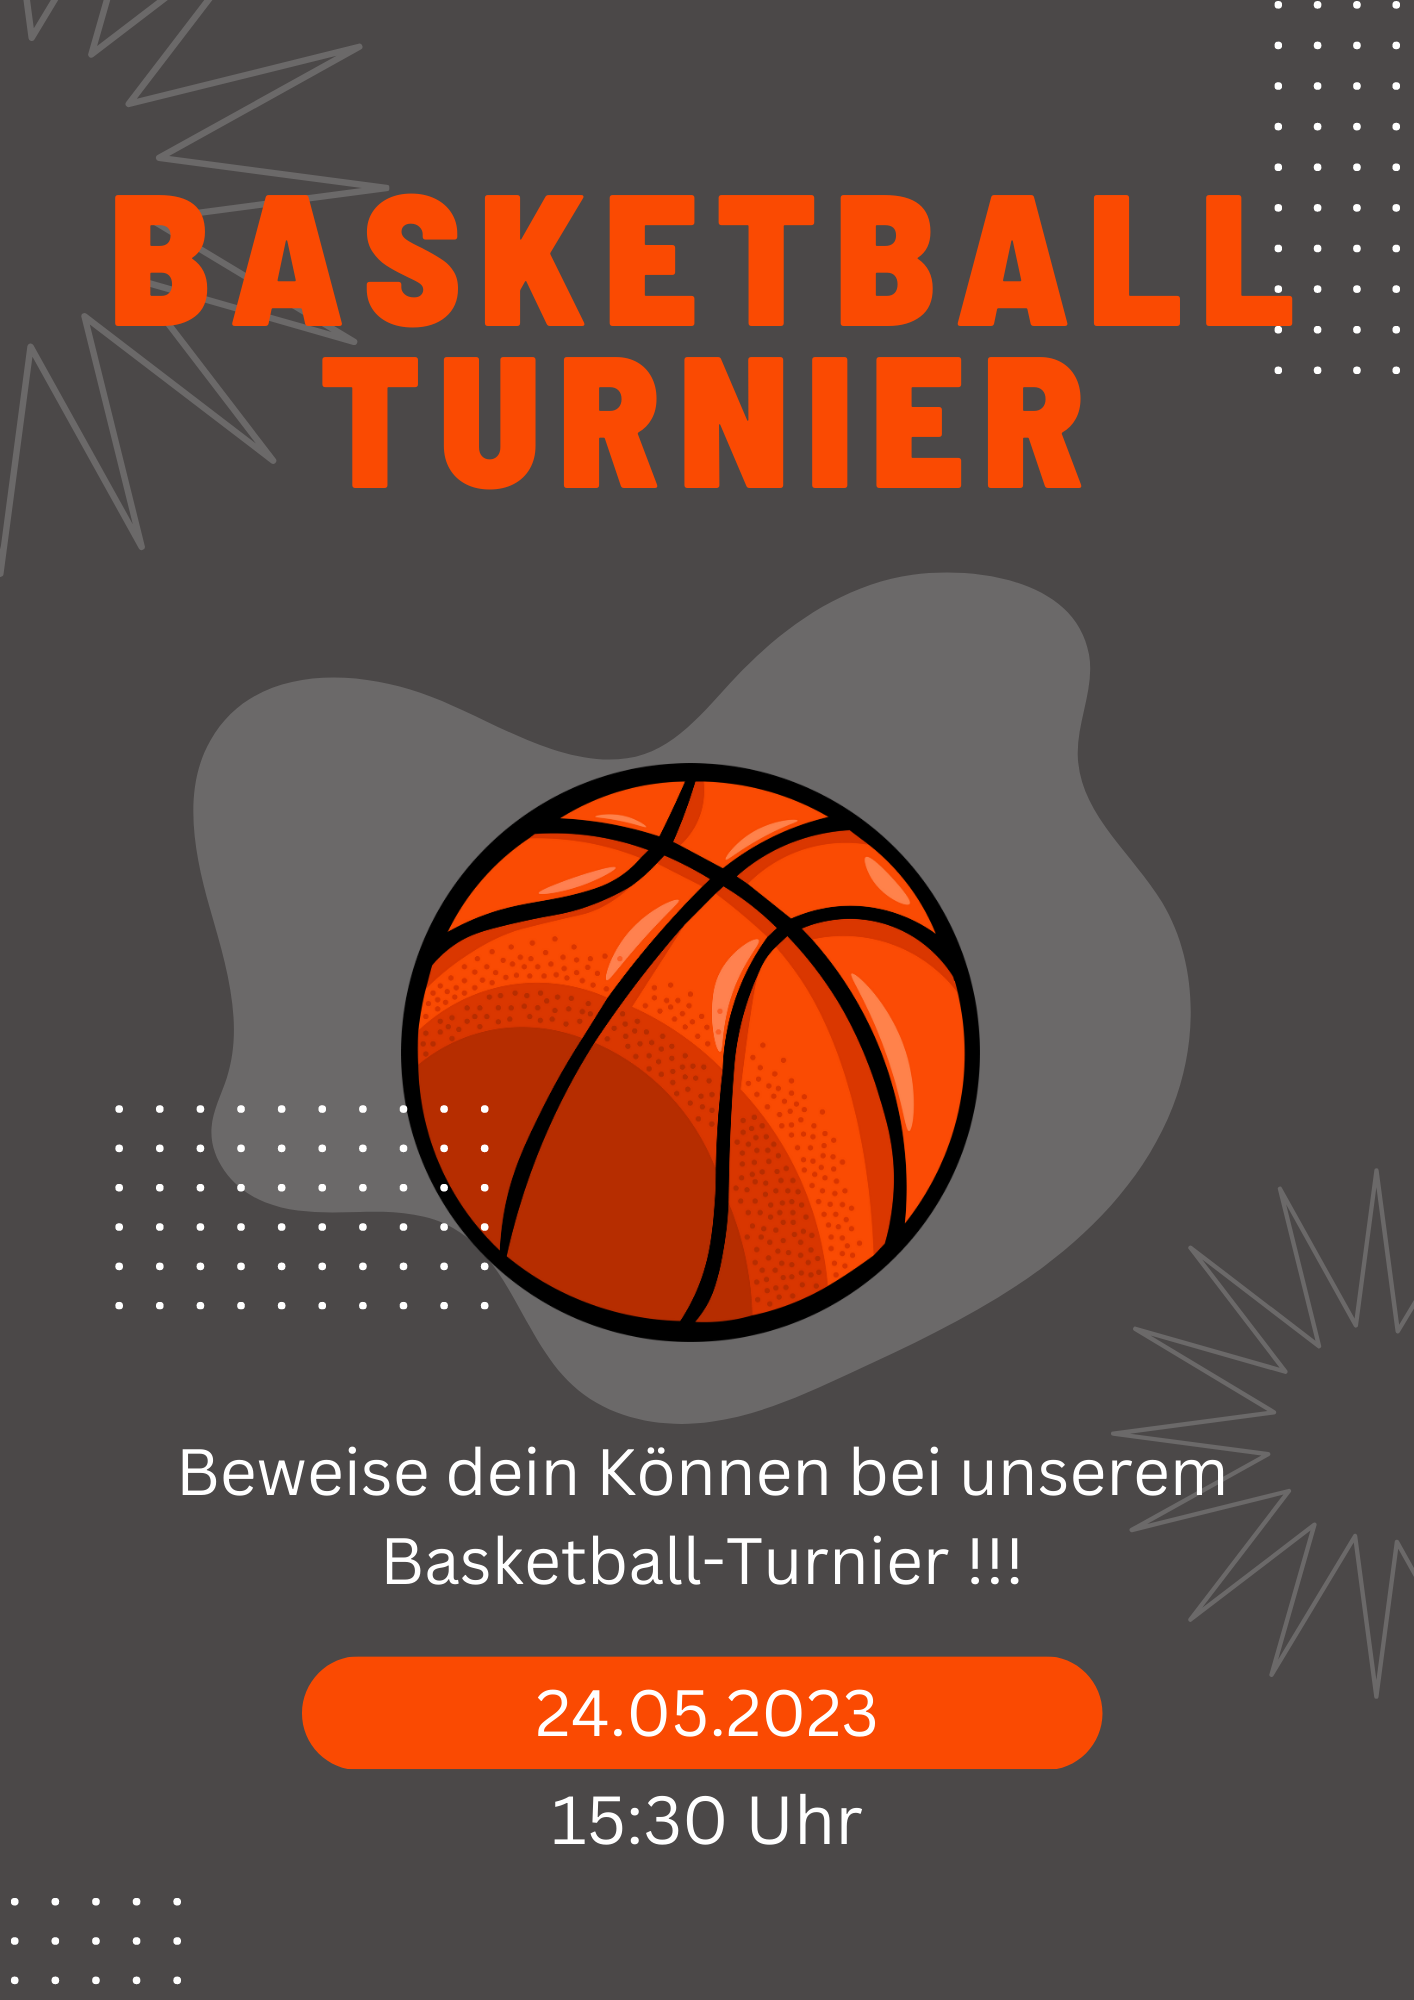 Plakat zur Ankuendigung eines Basketballturniers